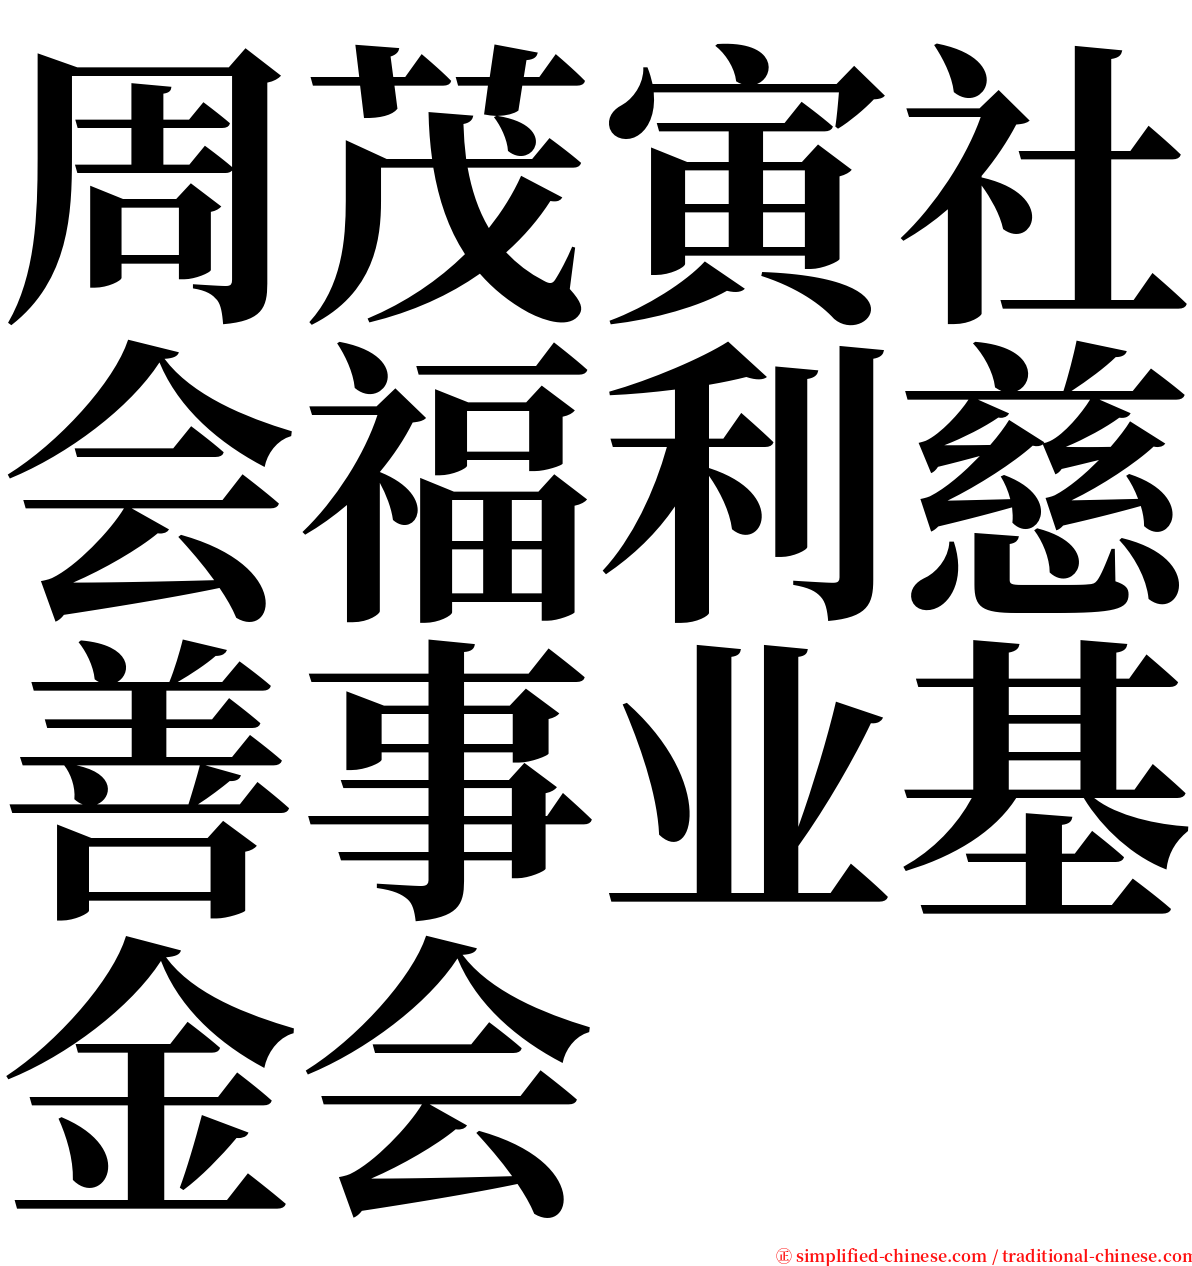 周茂寅社会福利慈善事业基金会 serif font